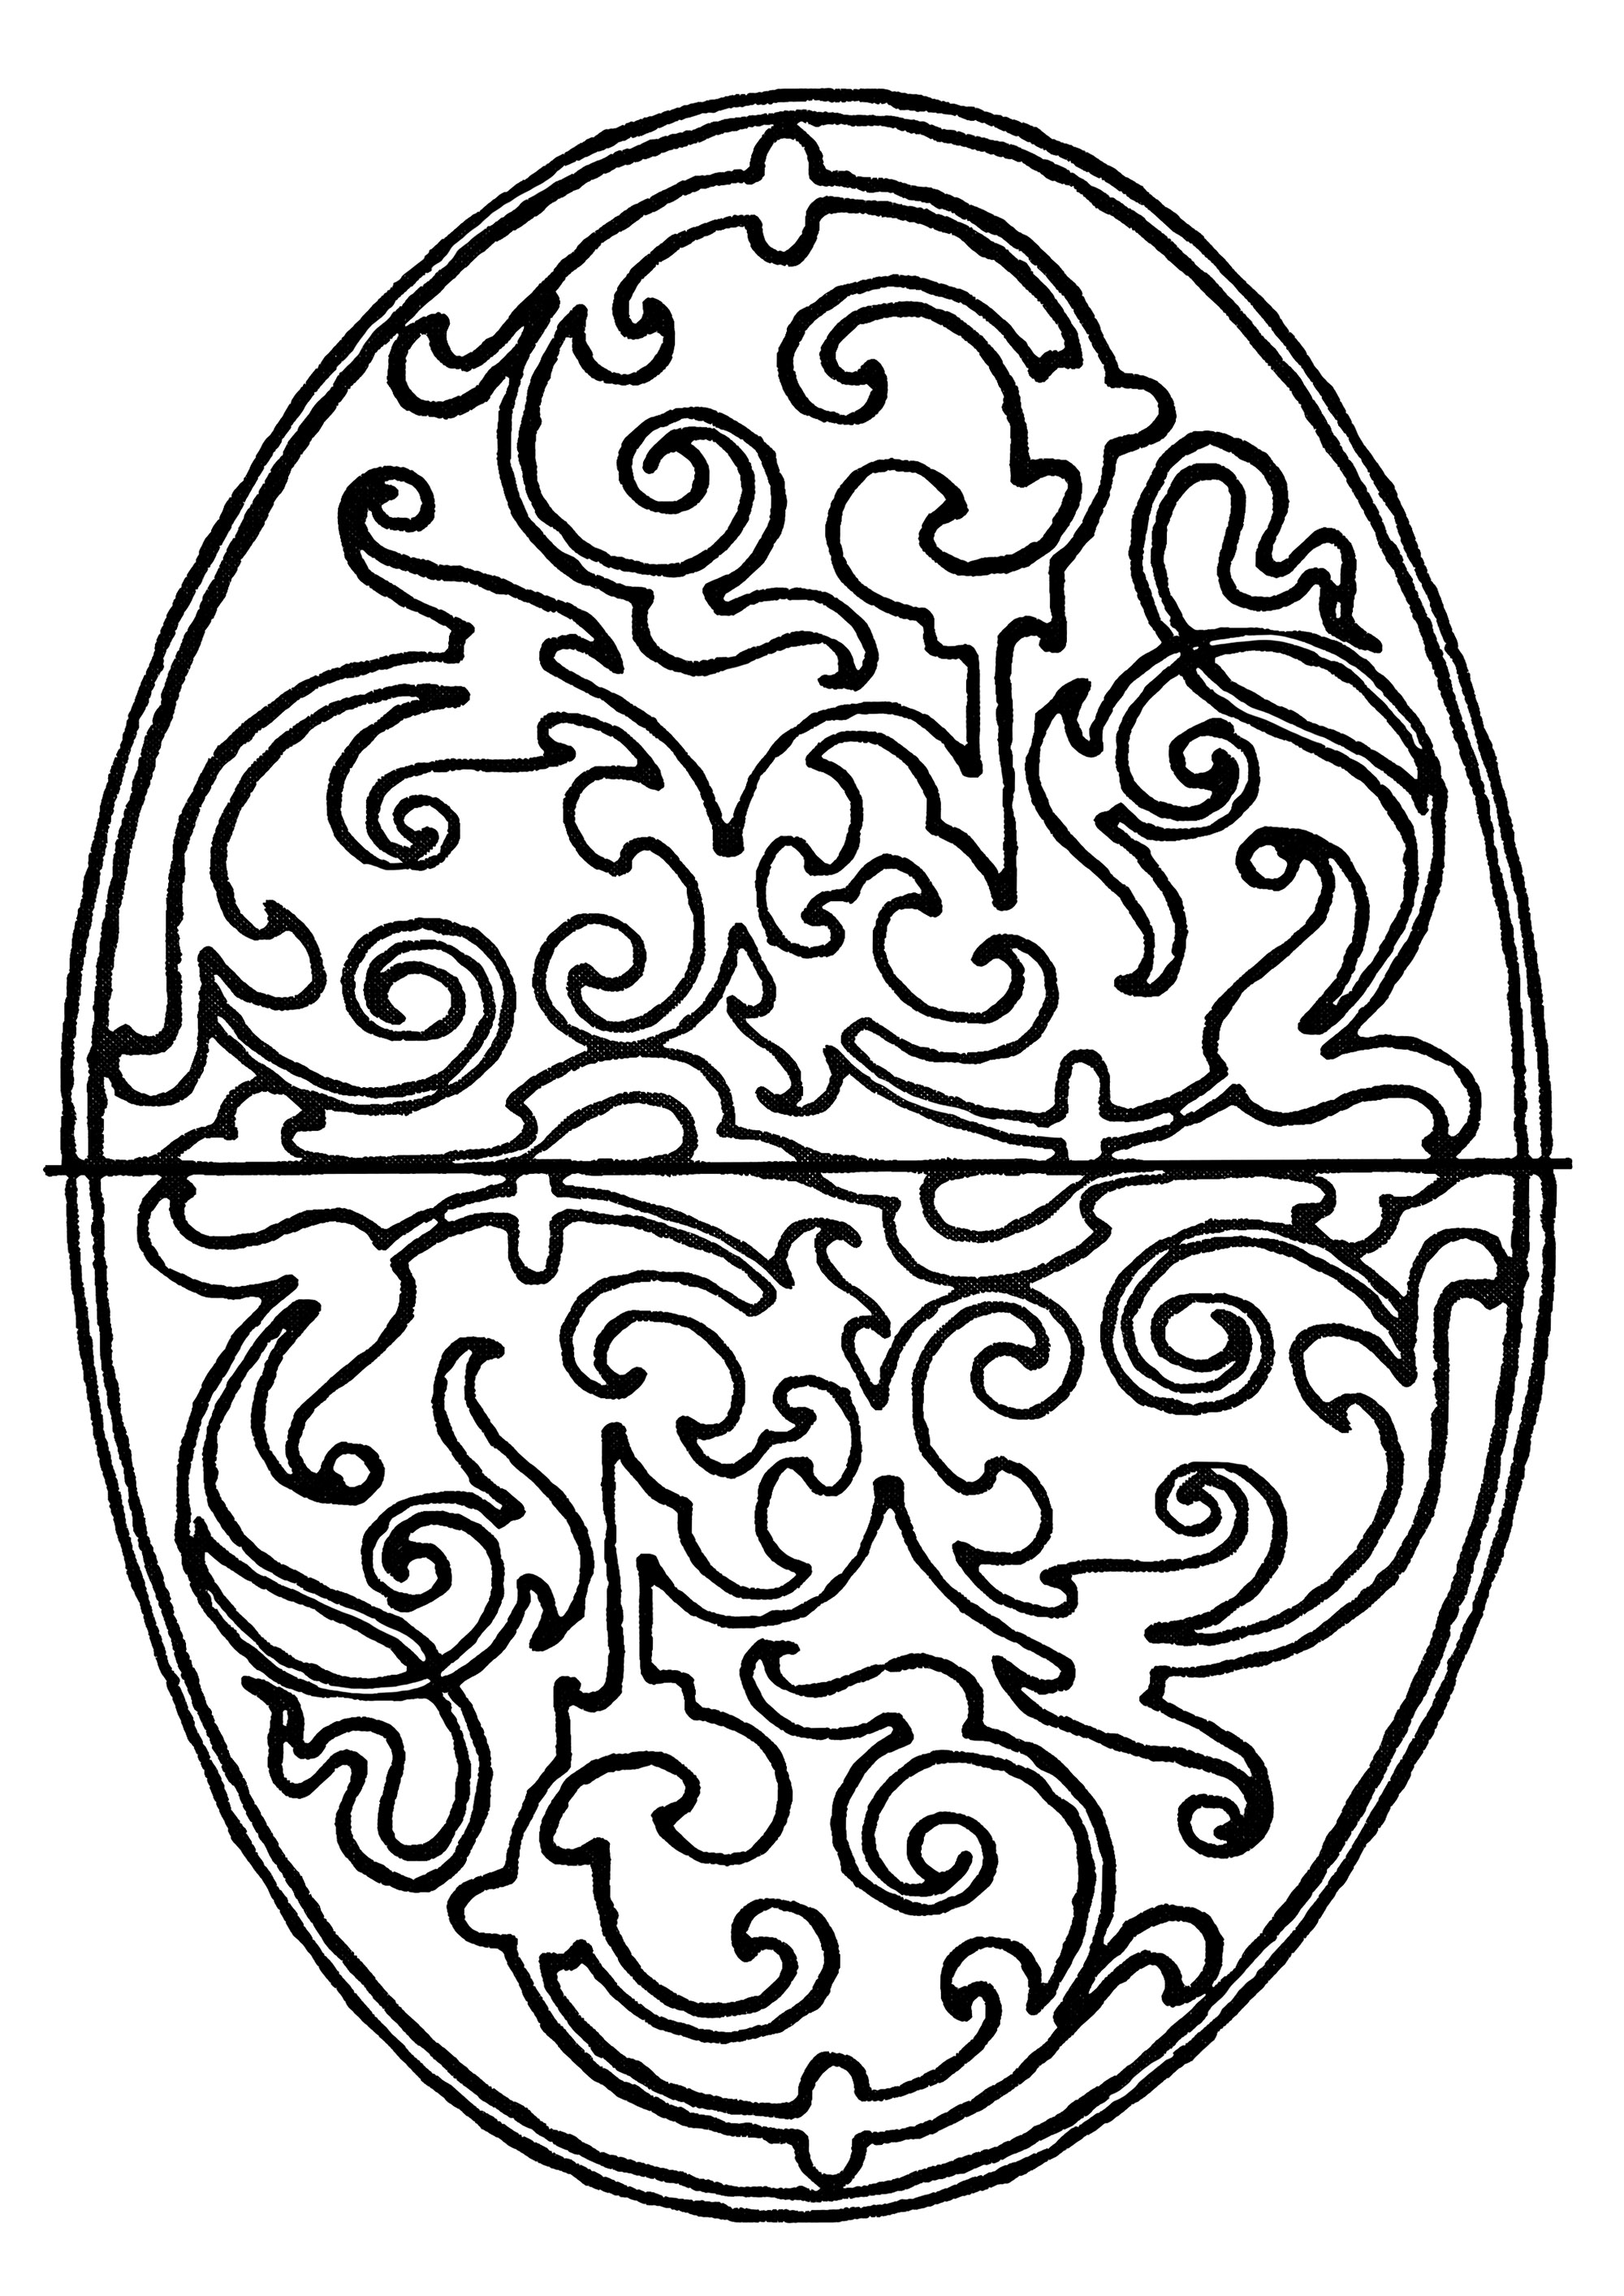 Joli Azujelo ovale. Coloriage ovale inspiré d'un Azujelo portugais, aux motifs végétaux magnifiques, réguliers et harmonieux